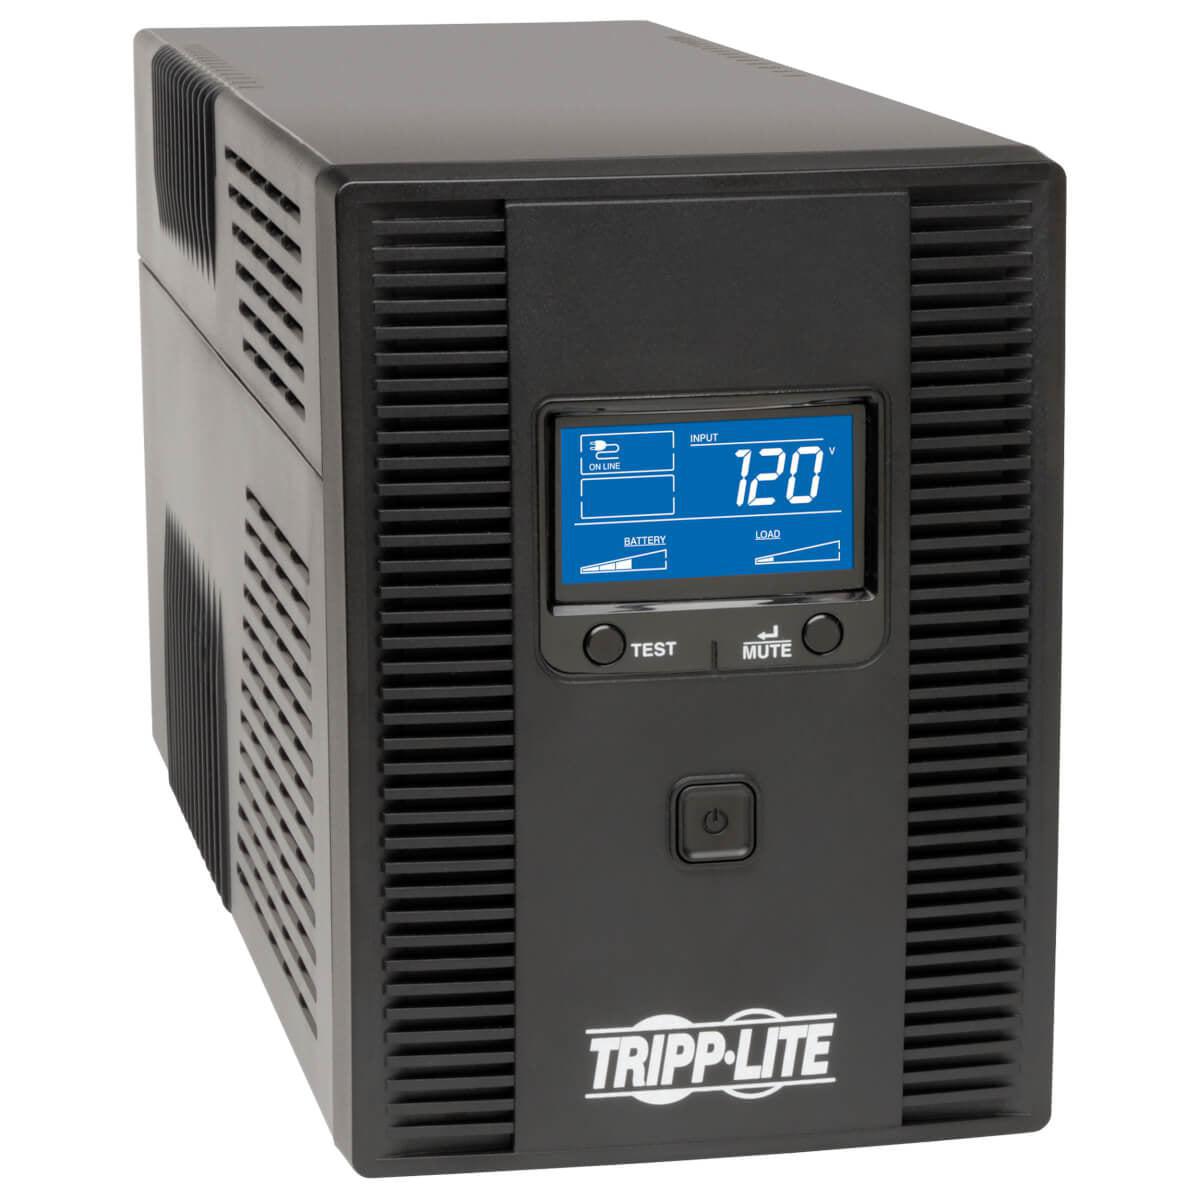 Tripp Lite Omnismart Lcd 120V 1500Va 810W Line-Interactive Ups, Tower, Lcd Display, Usb Port